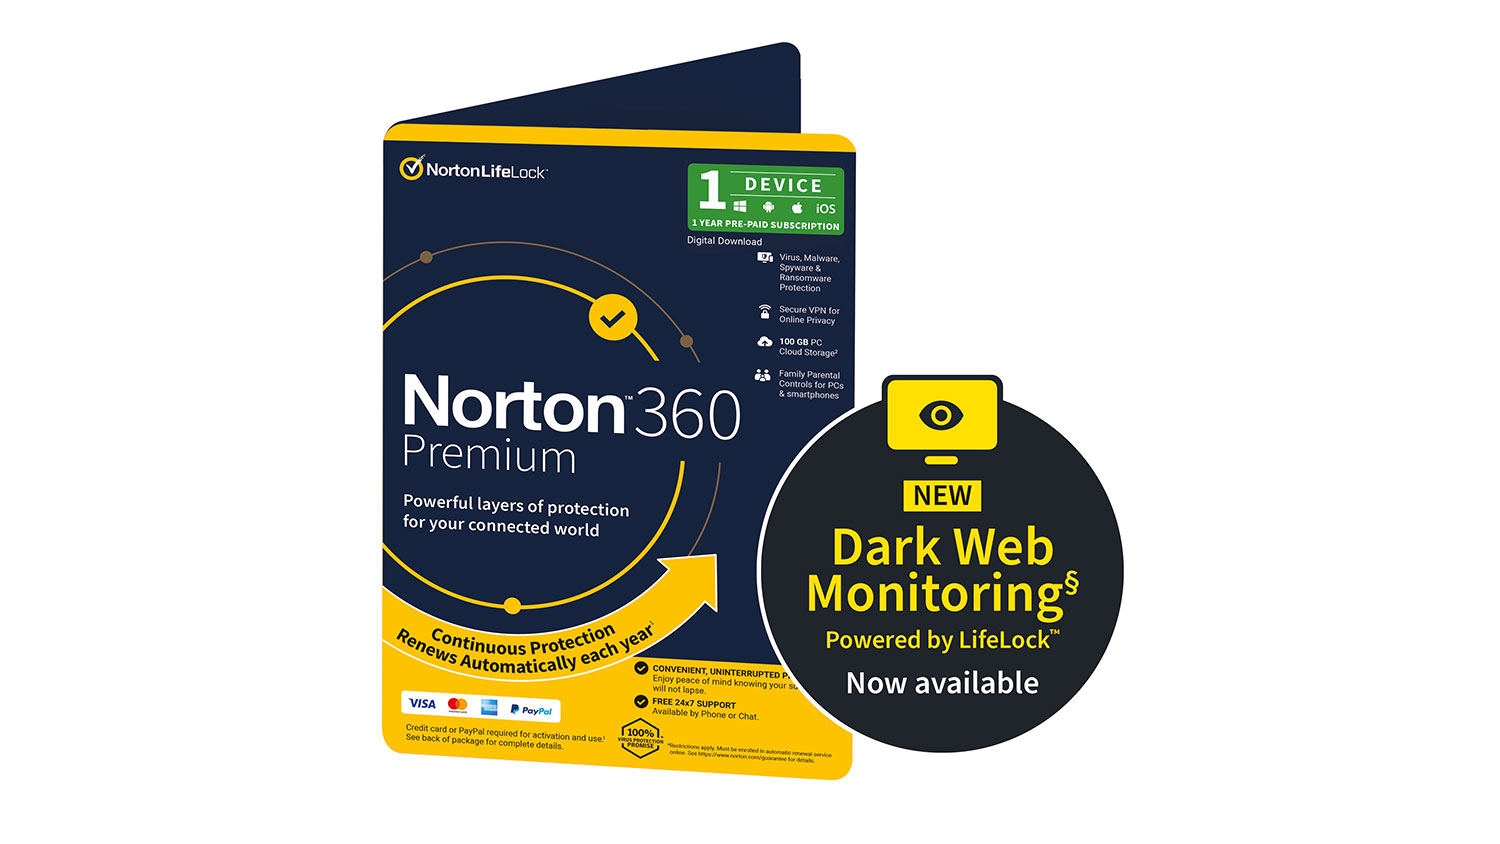 norton 360 free trial download no credit card